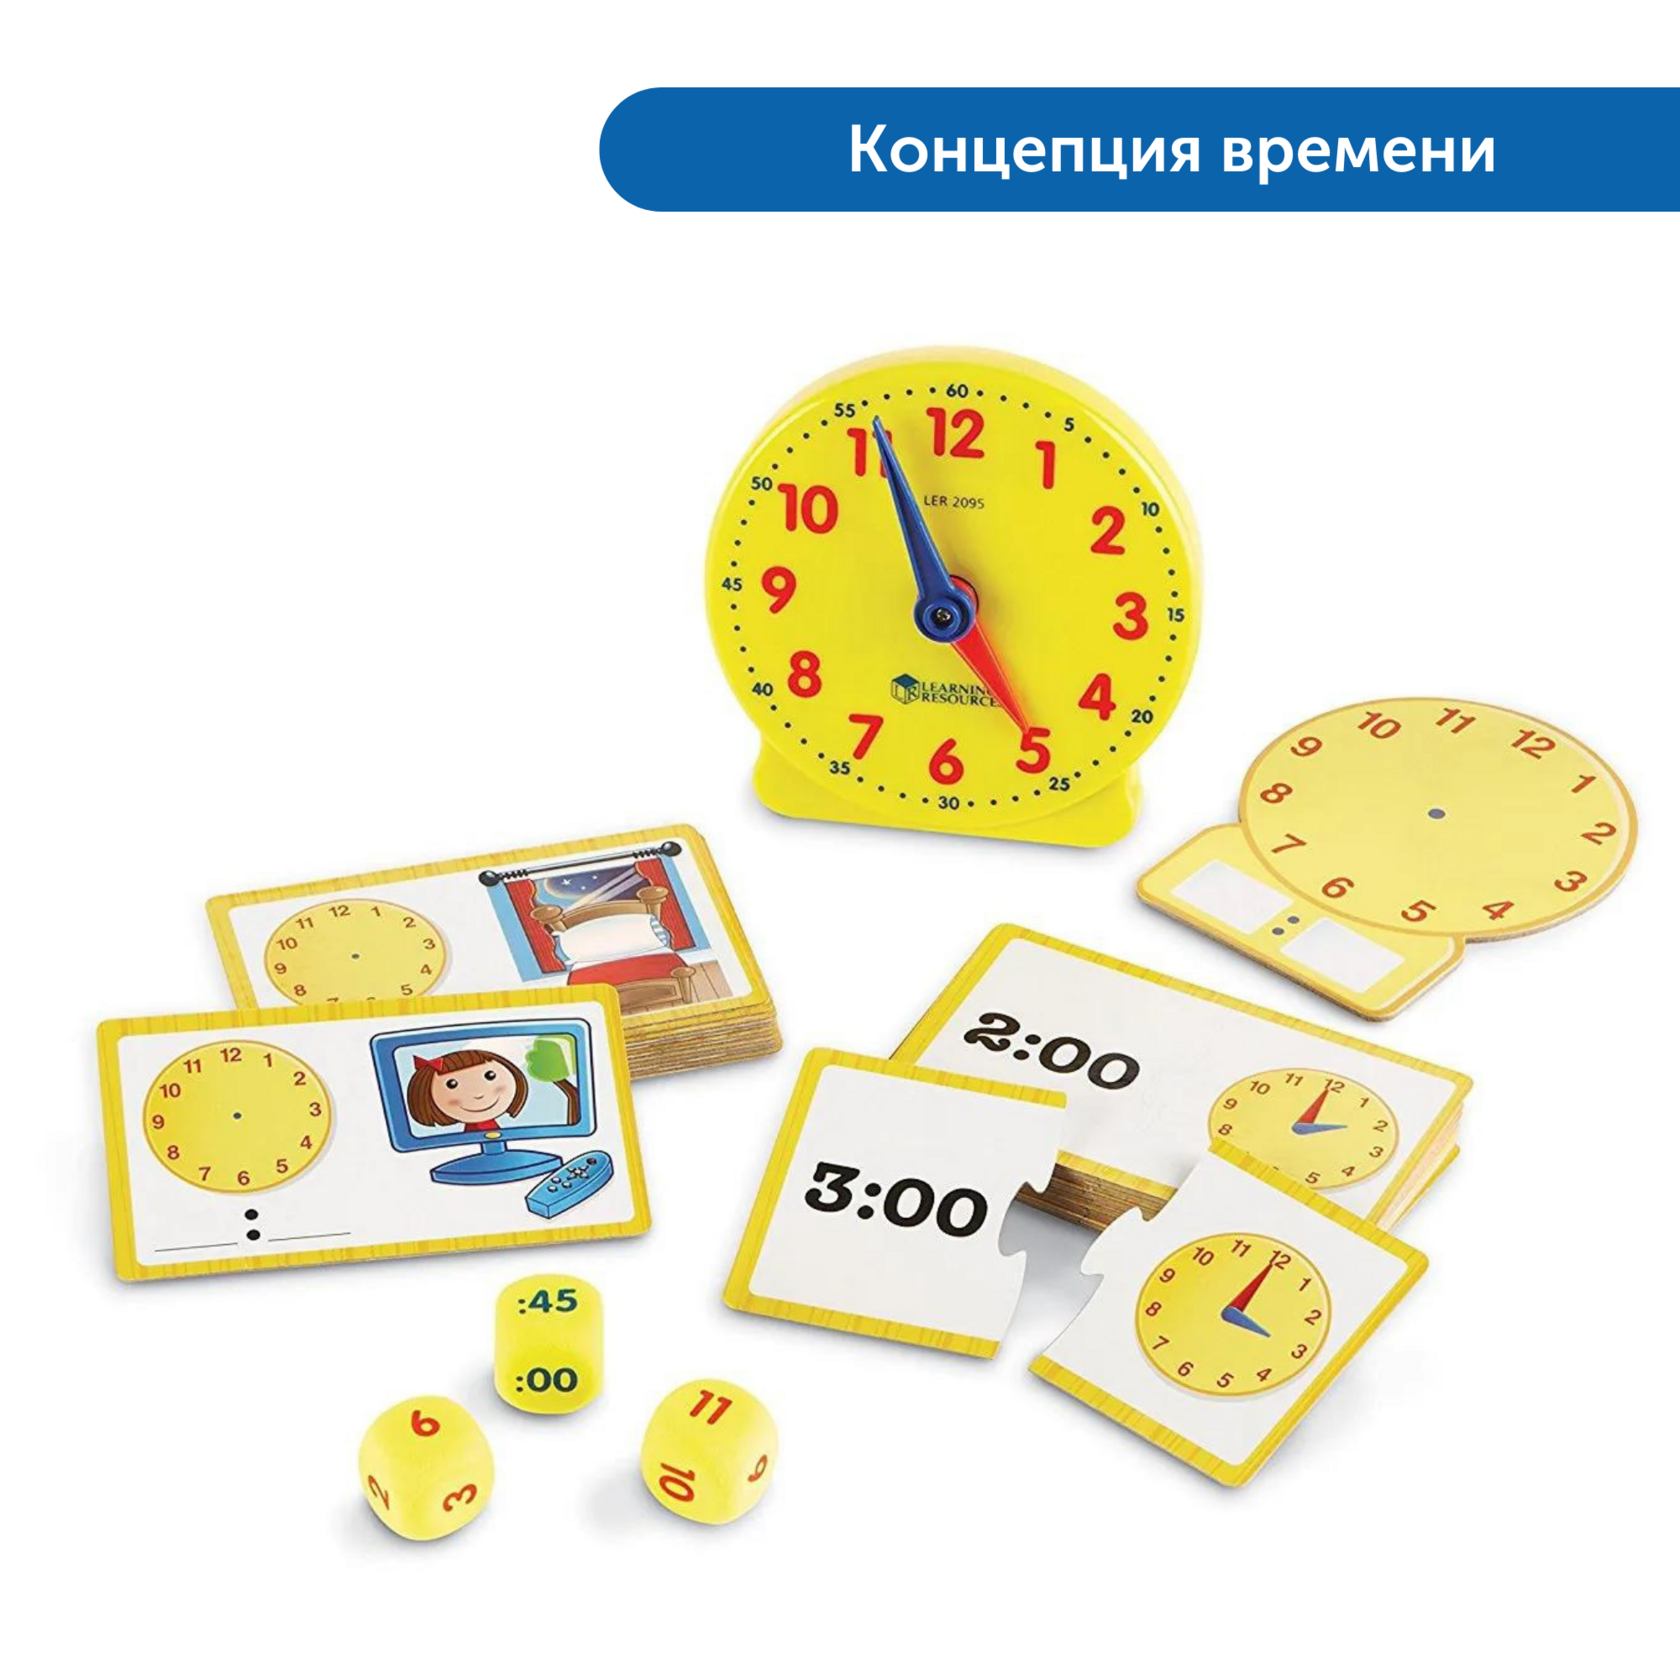 Игра обучение времени. Обучающие часы. Игрушка для изучения часов. Часы игрушка для детей обучающие. Часы обучающие для детей.